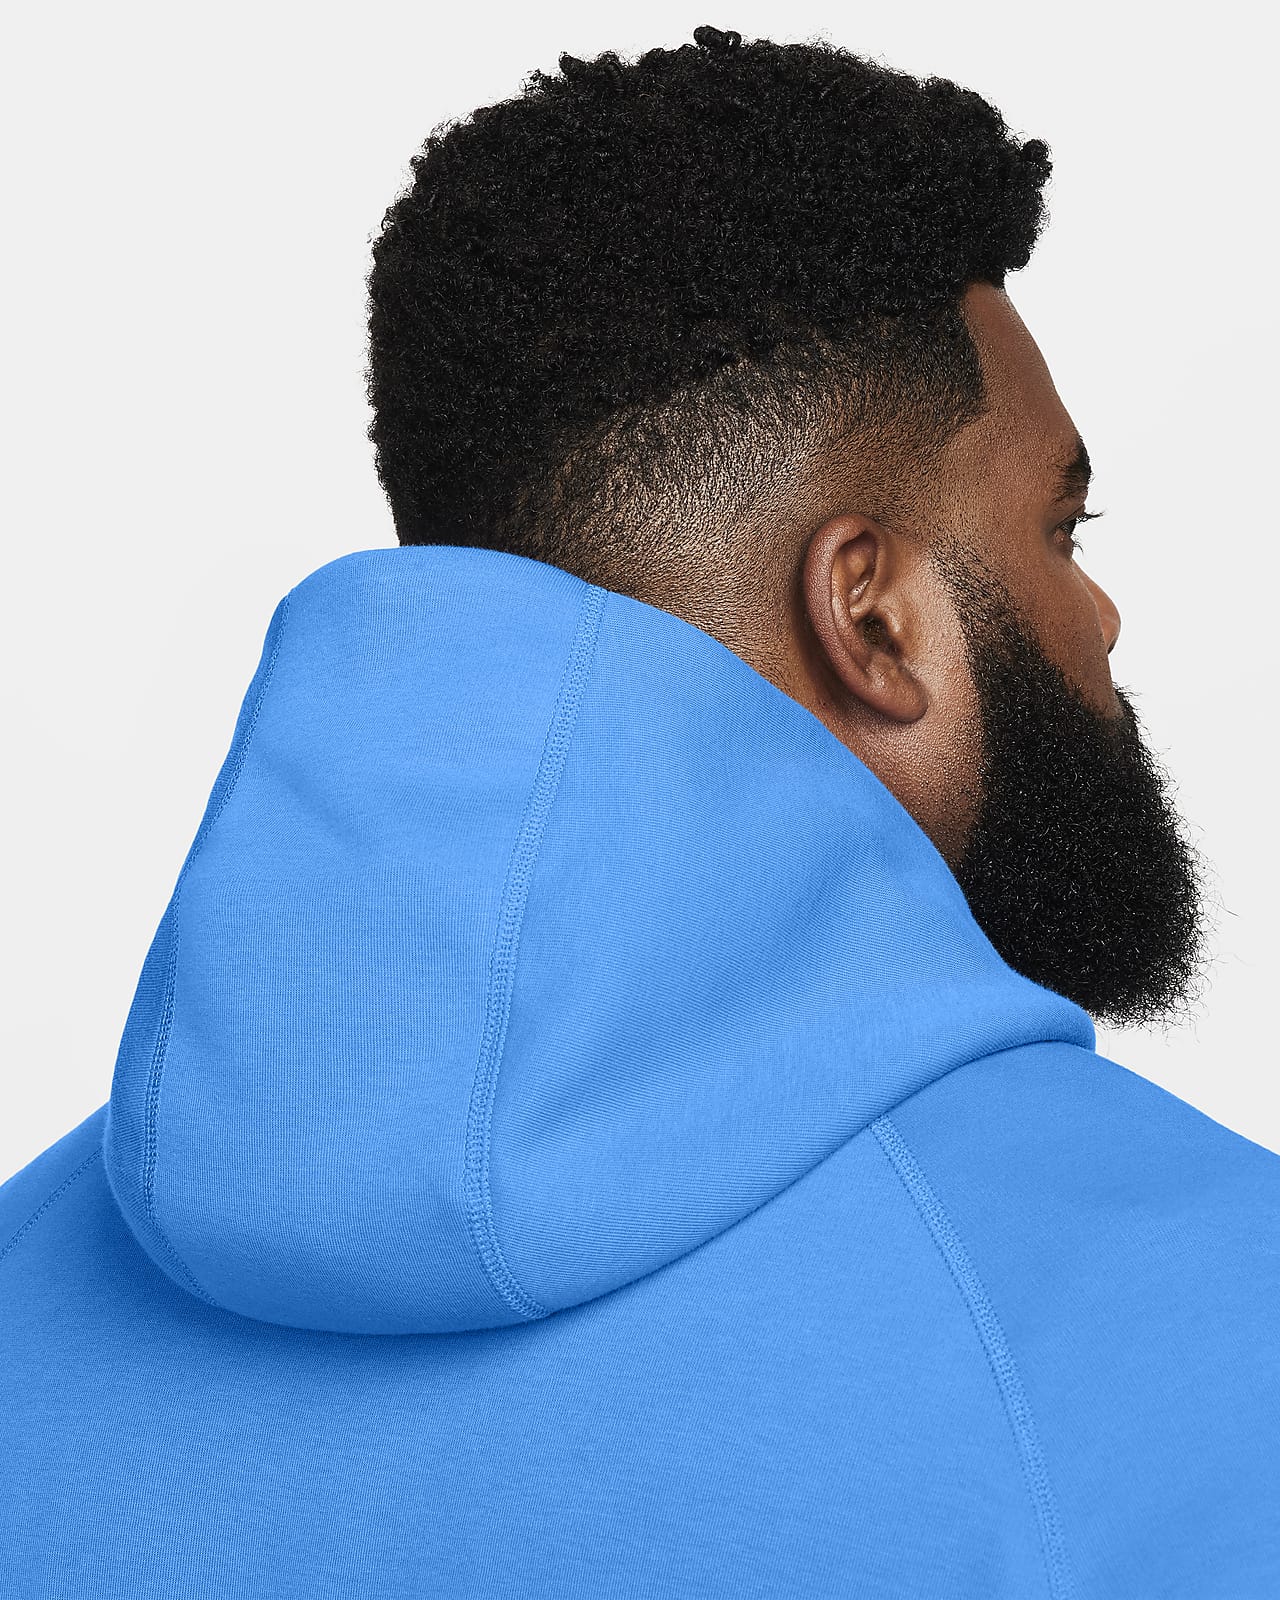 Sweatshirt Nike Tech Fleece Windrunner White-Blue 110 - Fútbol Emotion